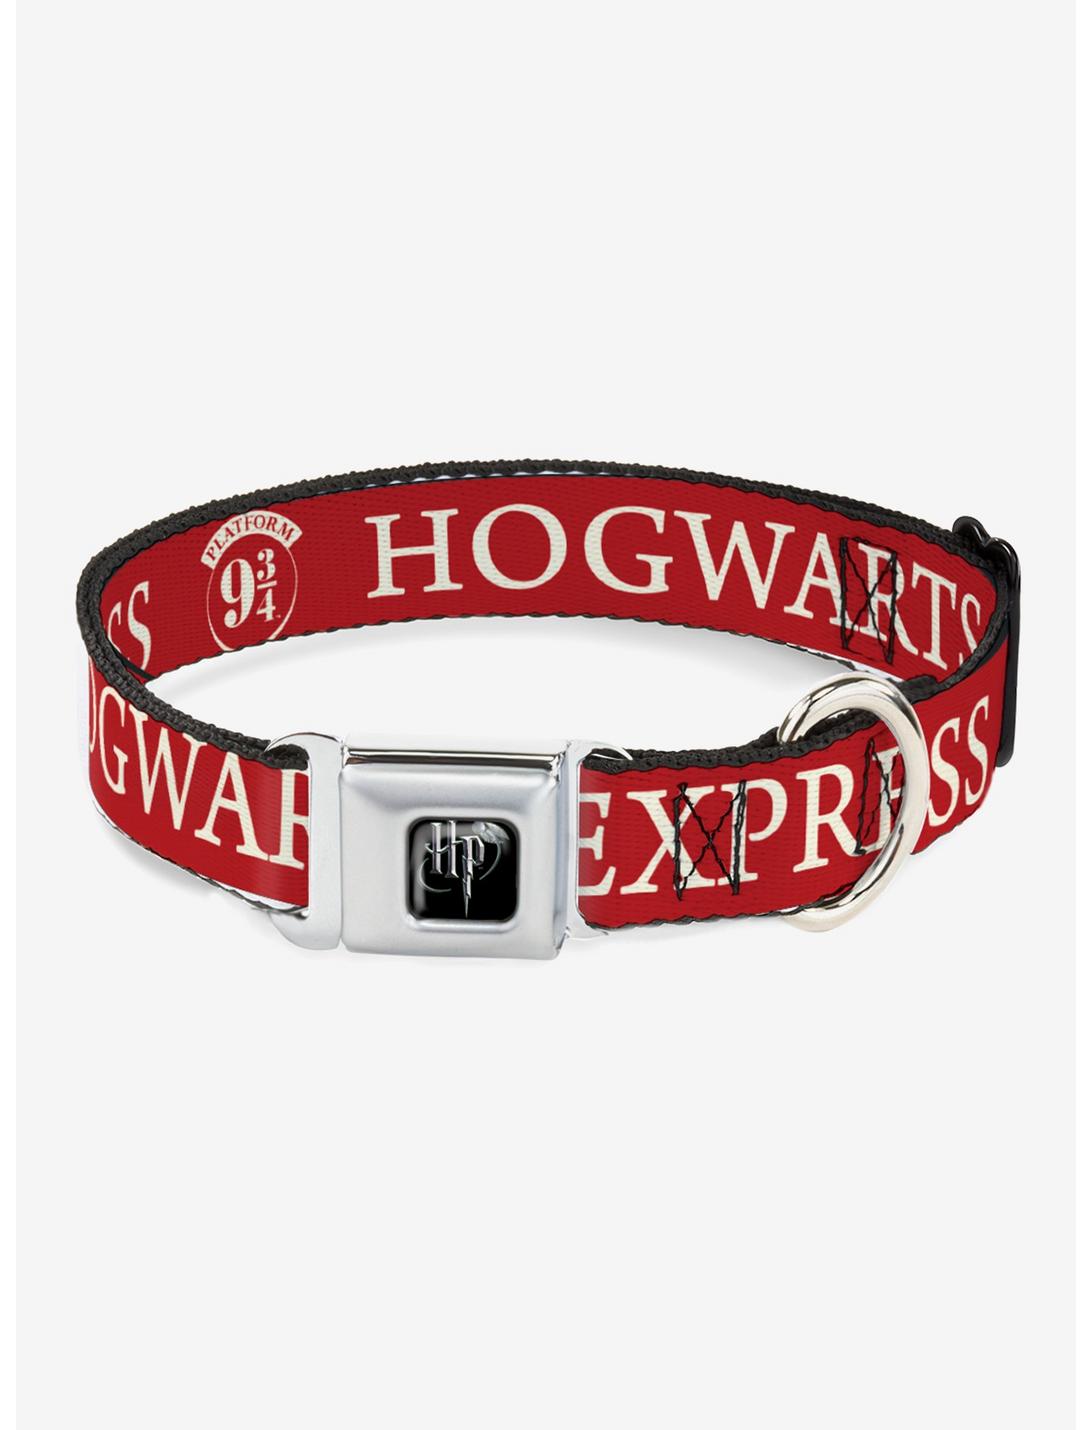 Harry Potter Hogwarts Express Seatbelt Buckle Dog Collar, RED, hi-res